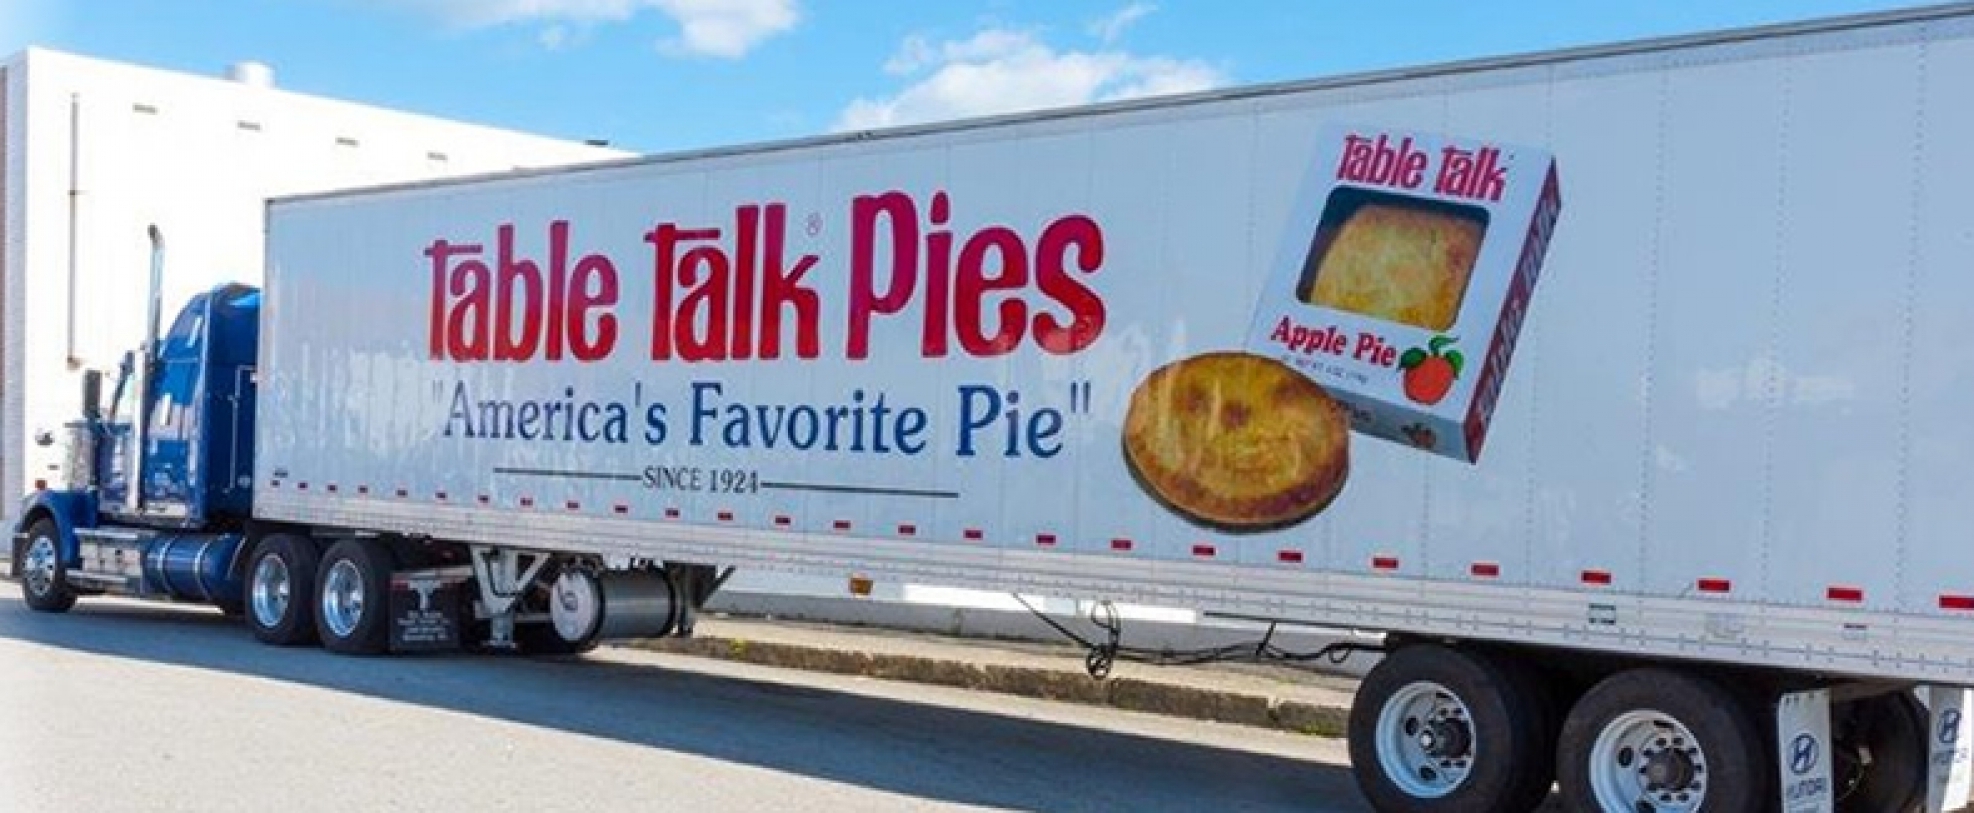 Table Talk Pies semi-truck